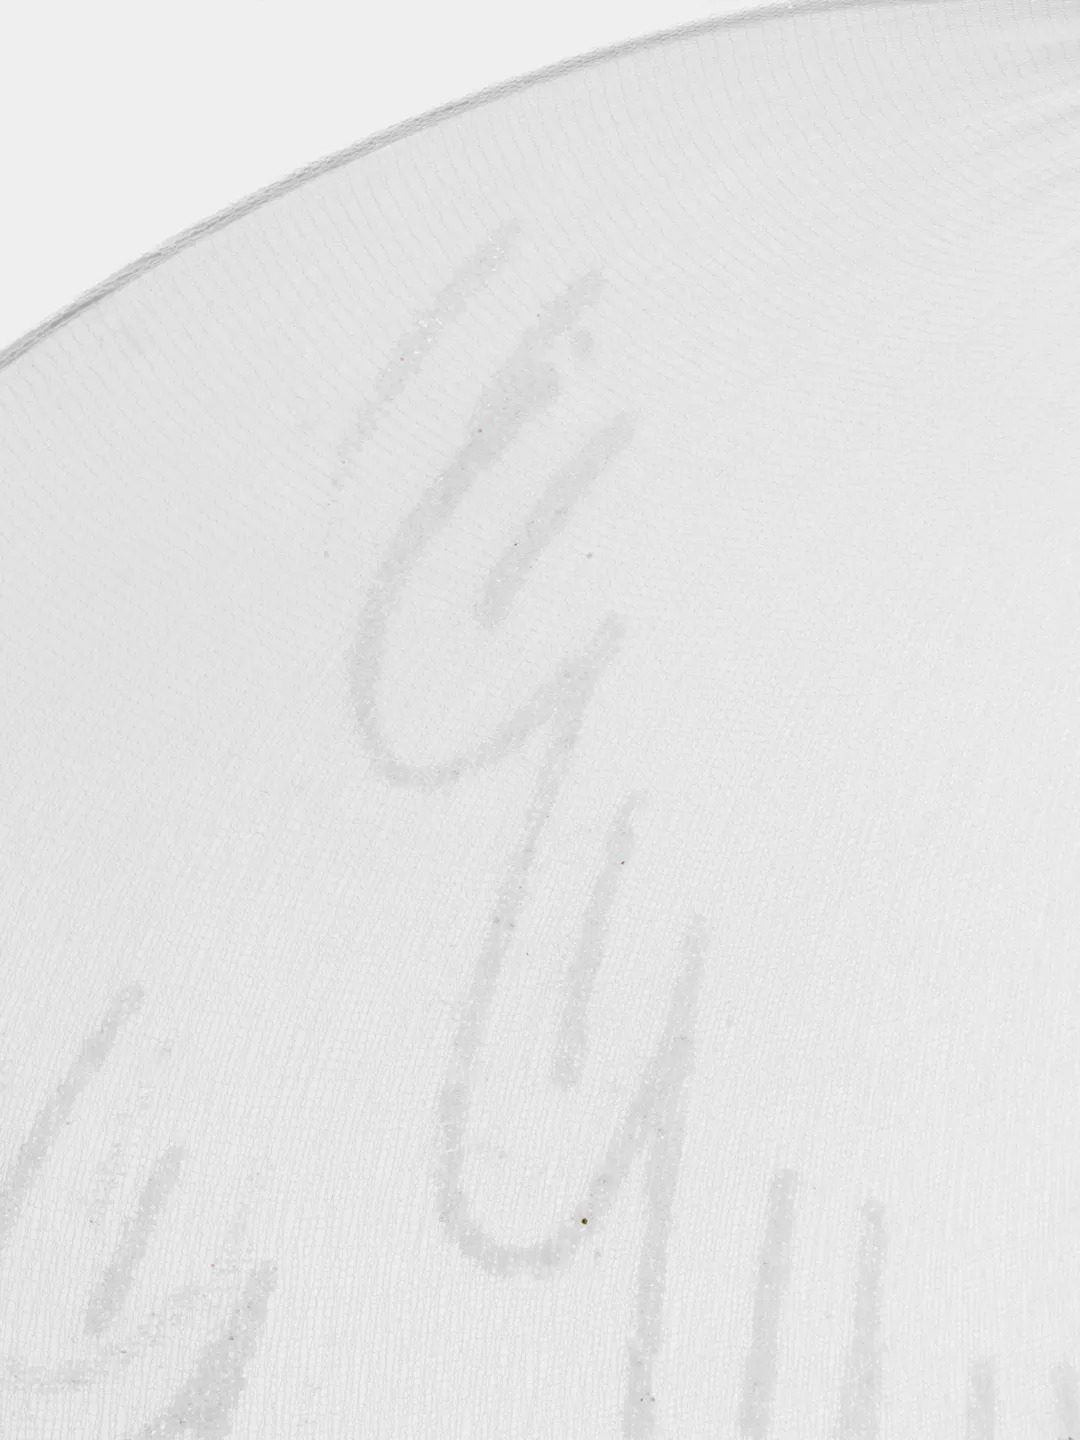 Beyaz Renk Ortası Beyaz Tüylü Tül Peri Kanadı 40x50 cm (Lisinya)